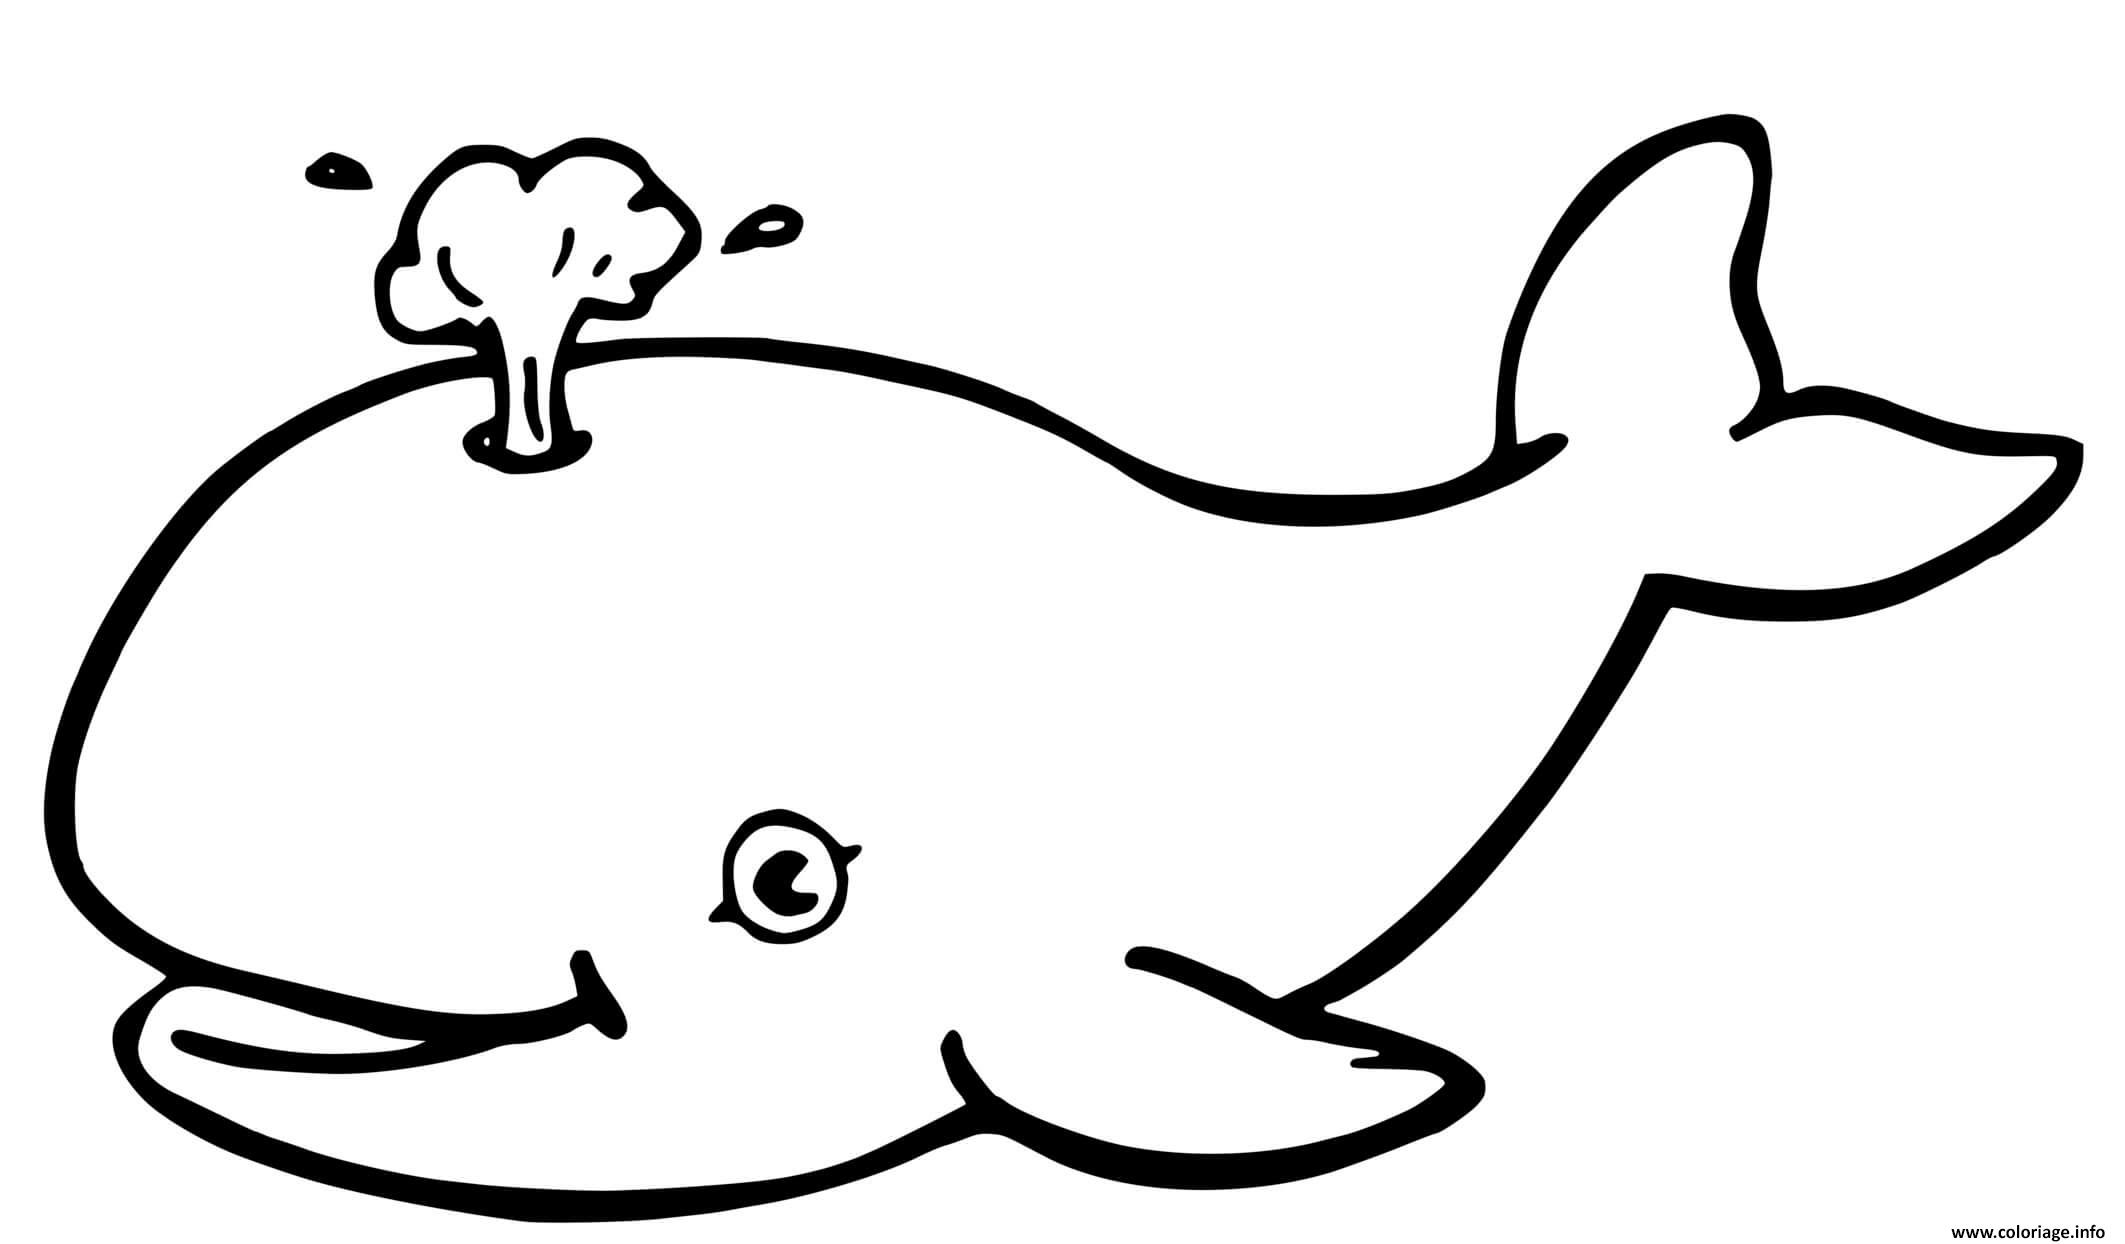 Coloriage Baleine Simple Pour Enfants Dessin Baleine à Imprimer